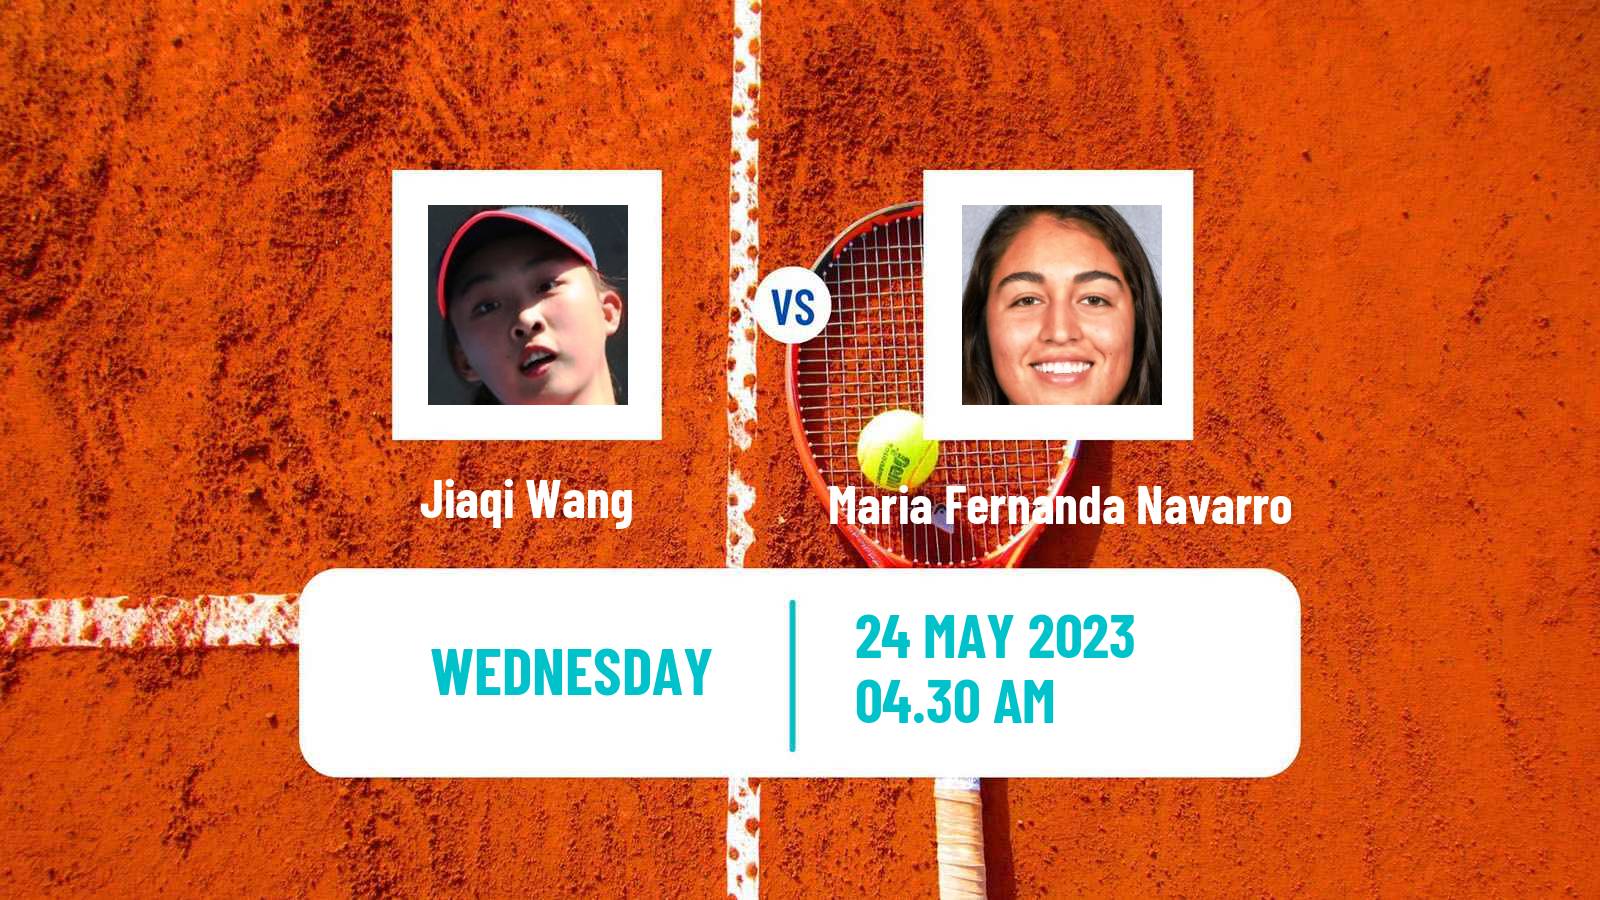 Tennis ITF W25 Monastir 3 Women Jiaqi Wang - Maria Fernanda Navarro